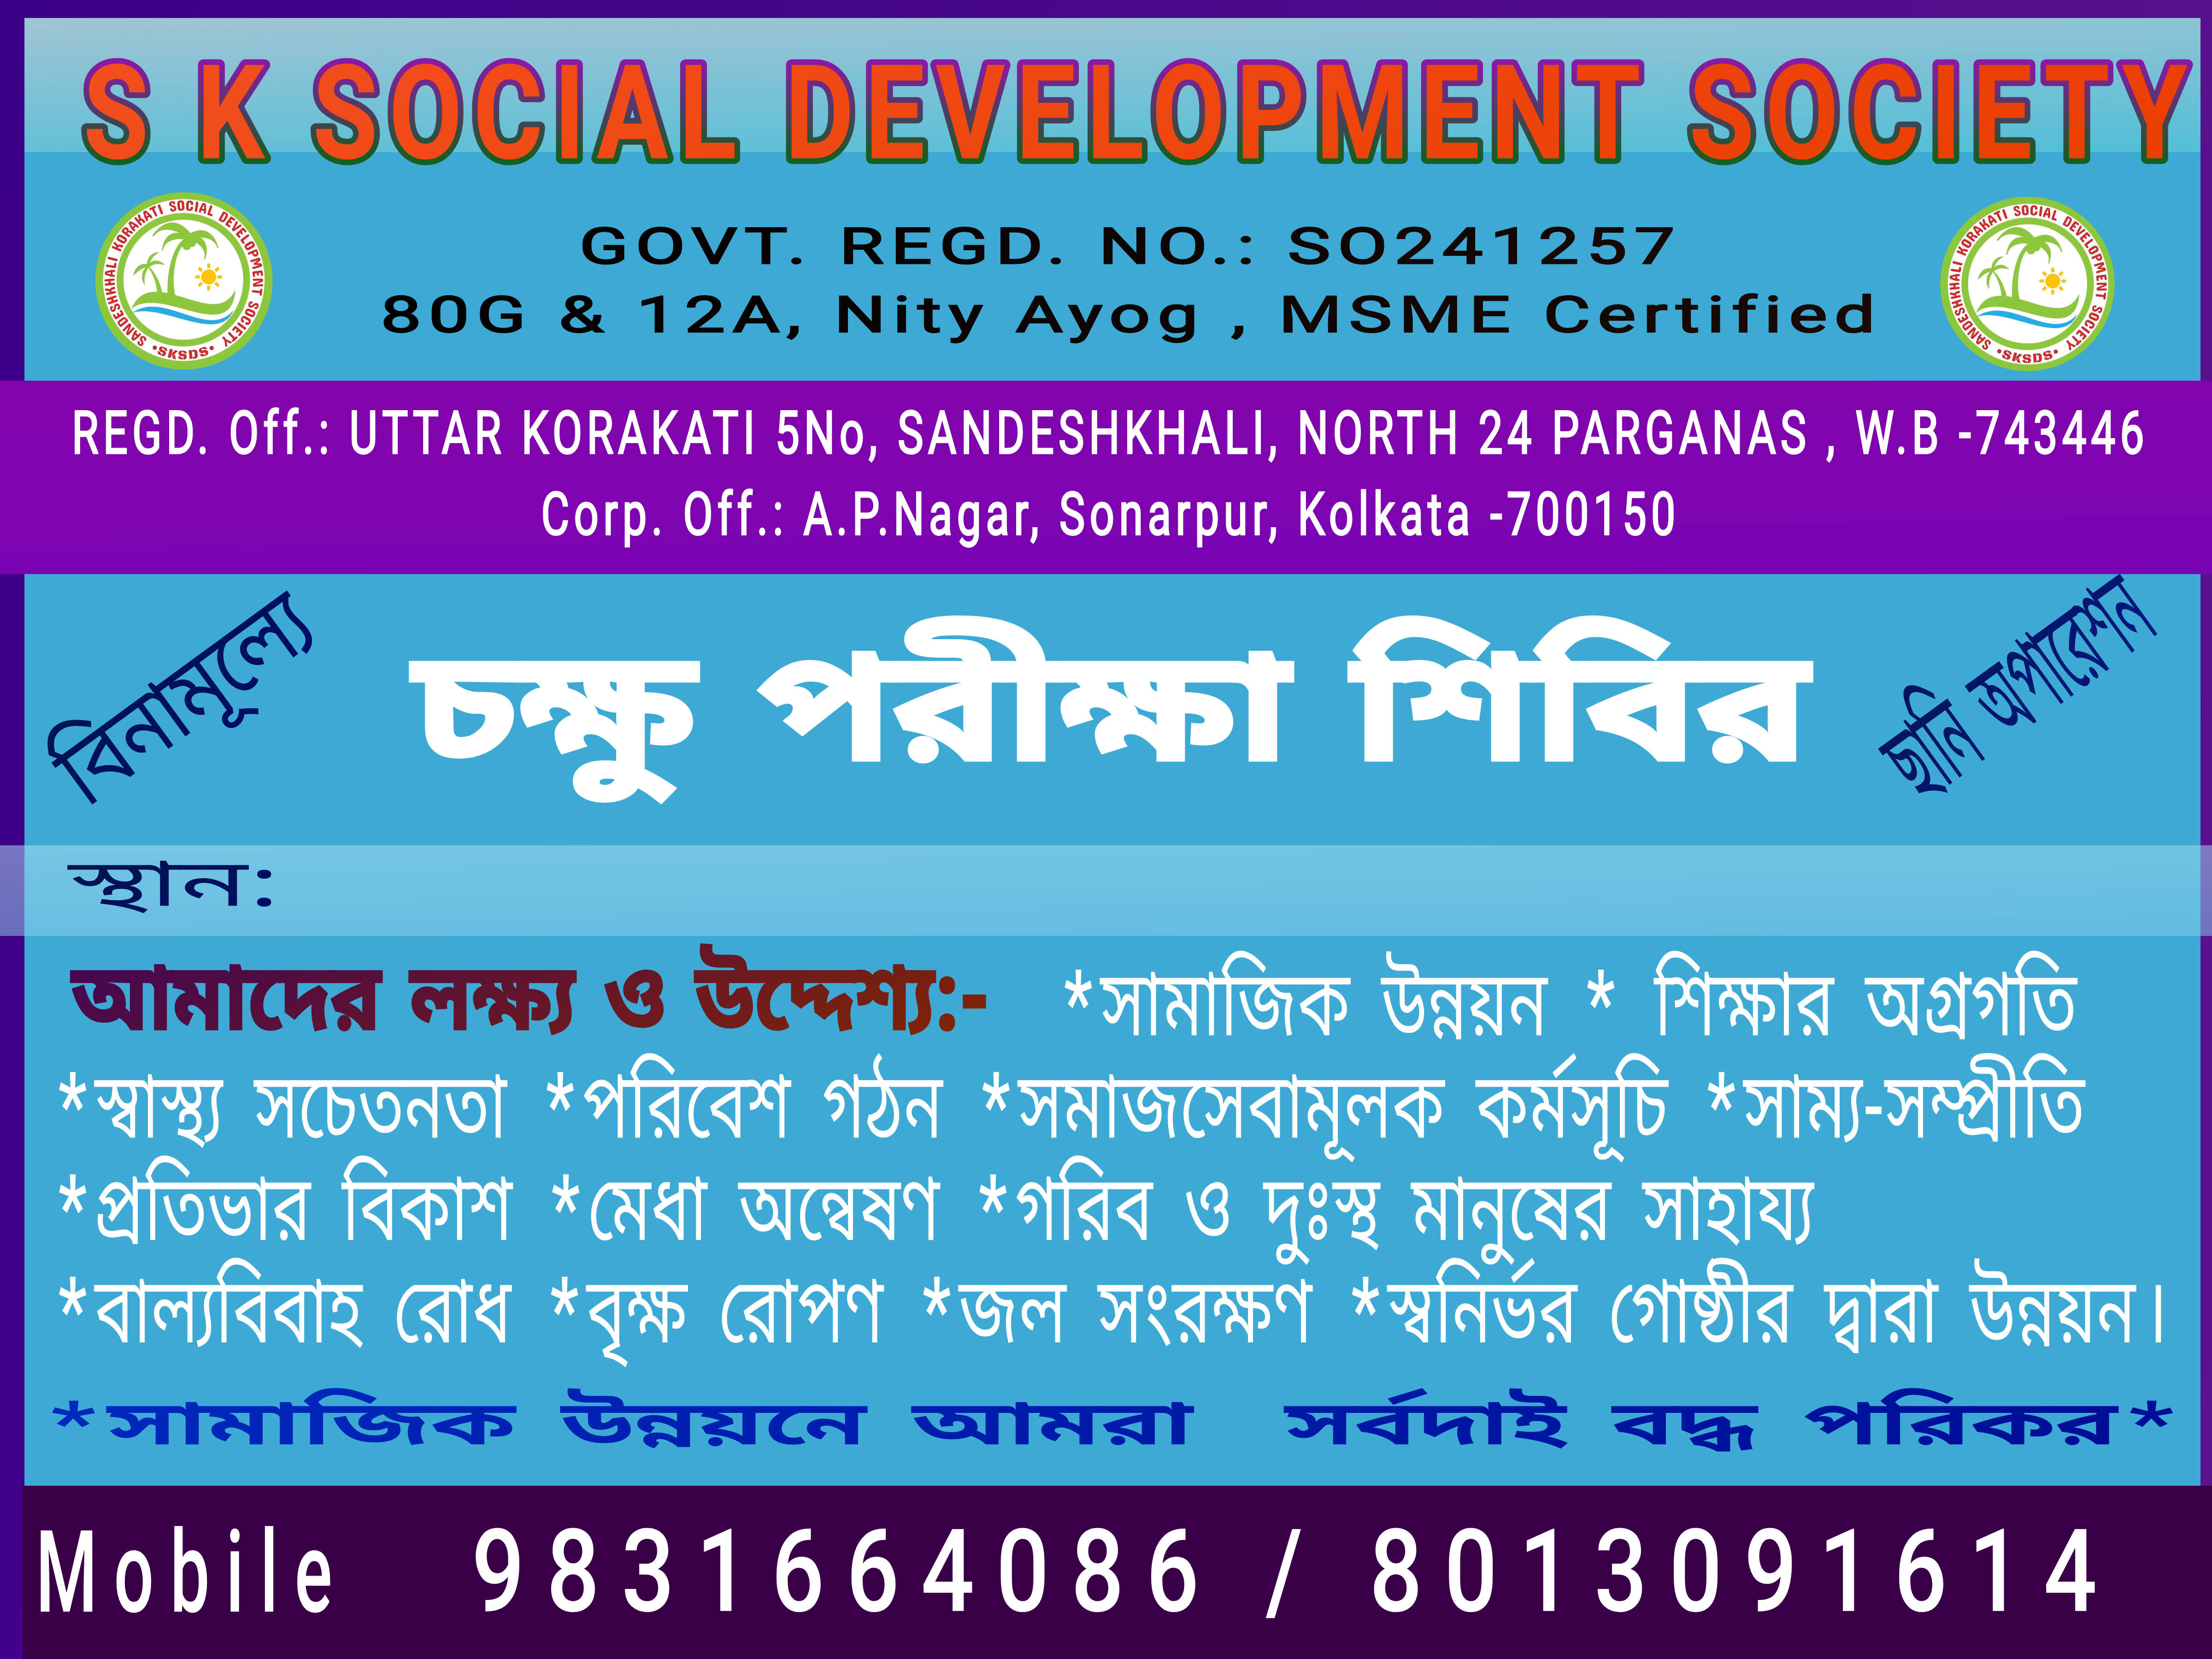 SandeshKhali korakati Social Development Society 